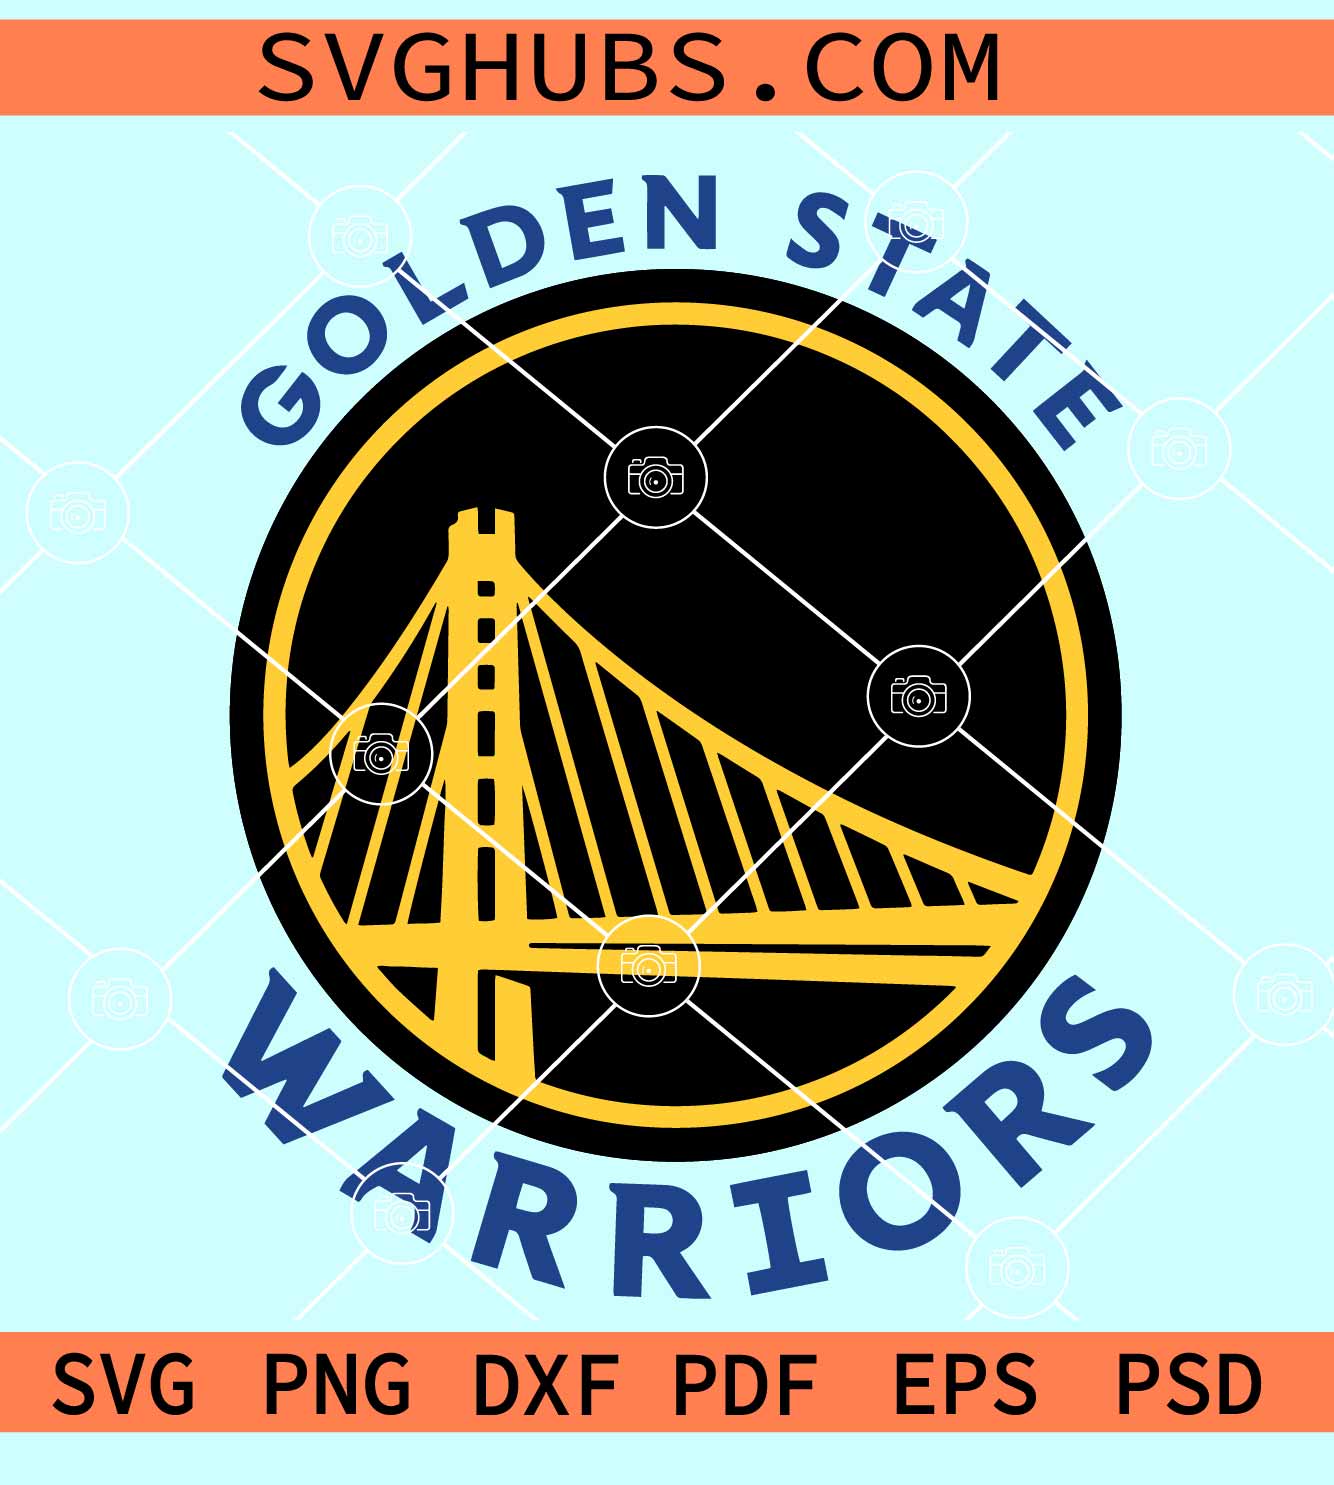 Bundle Golden State Warriors NBA Basketball Logo svg eps dxf png